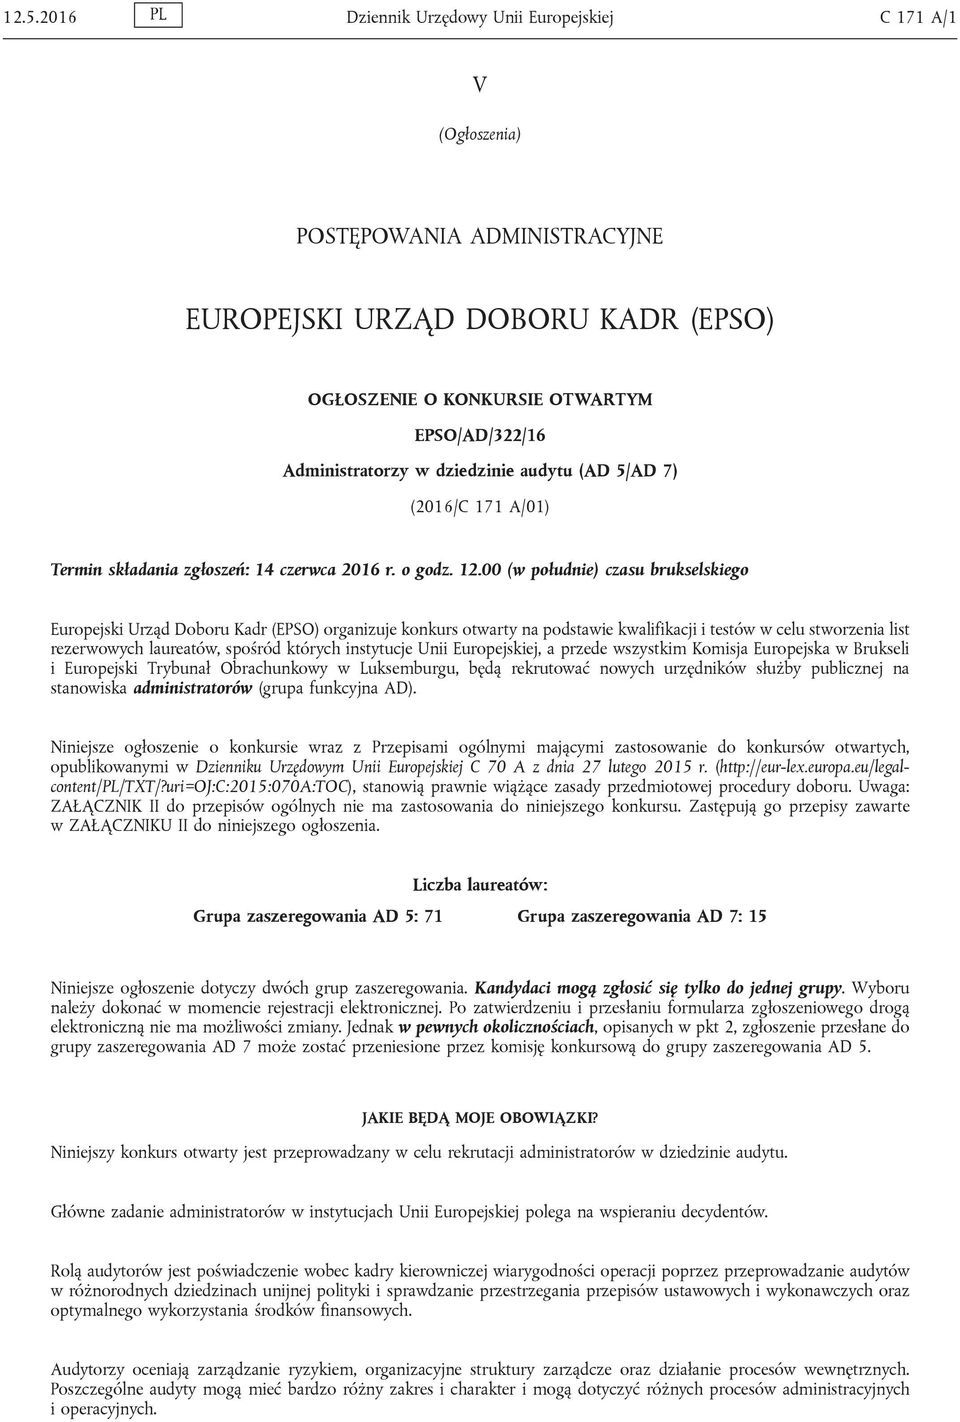 00 (w południe) czasu brukselskiego Europejski Urząd Doboru Kadr (EPSO) organizuje konkurs otwarty na podstawie kwalifikacji i testów w celu stworzenia list rezerwowych laureatów, spośród których